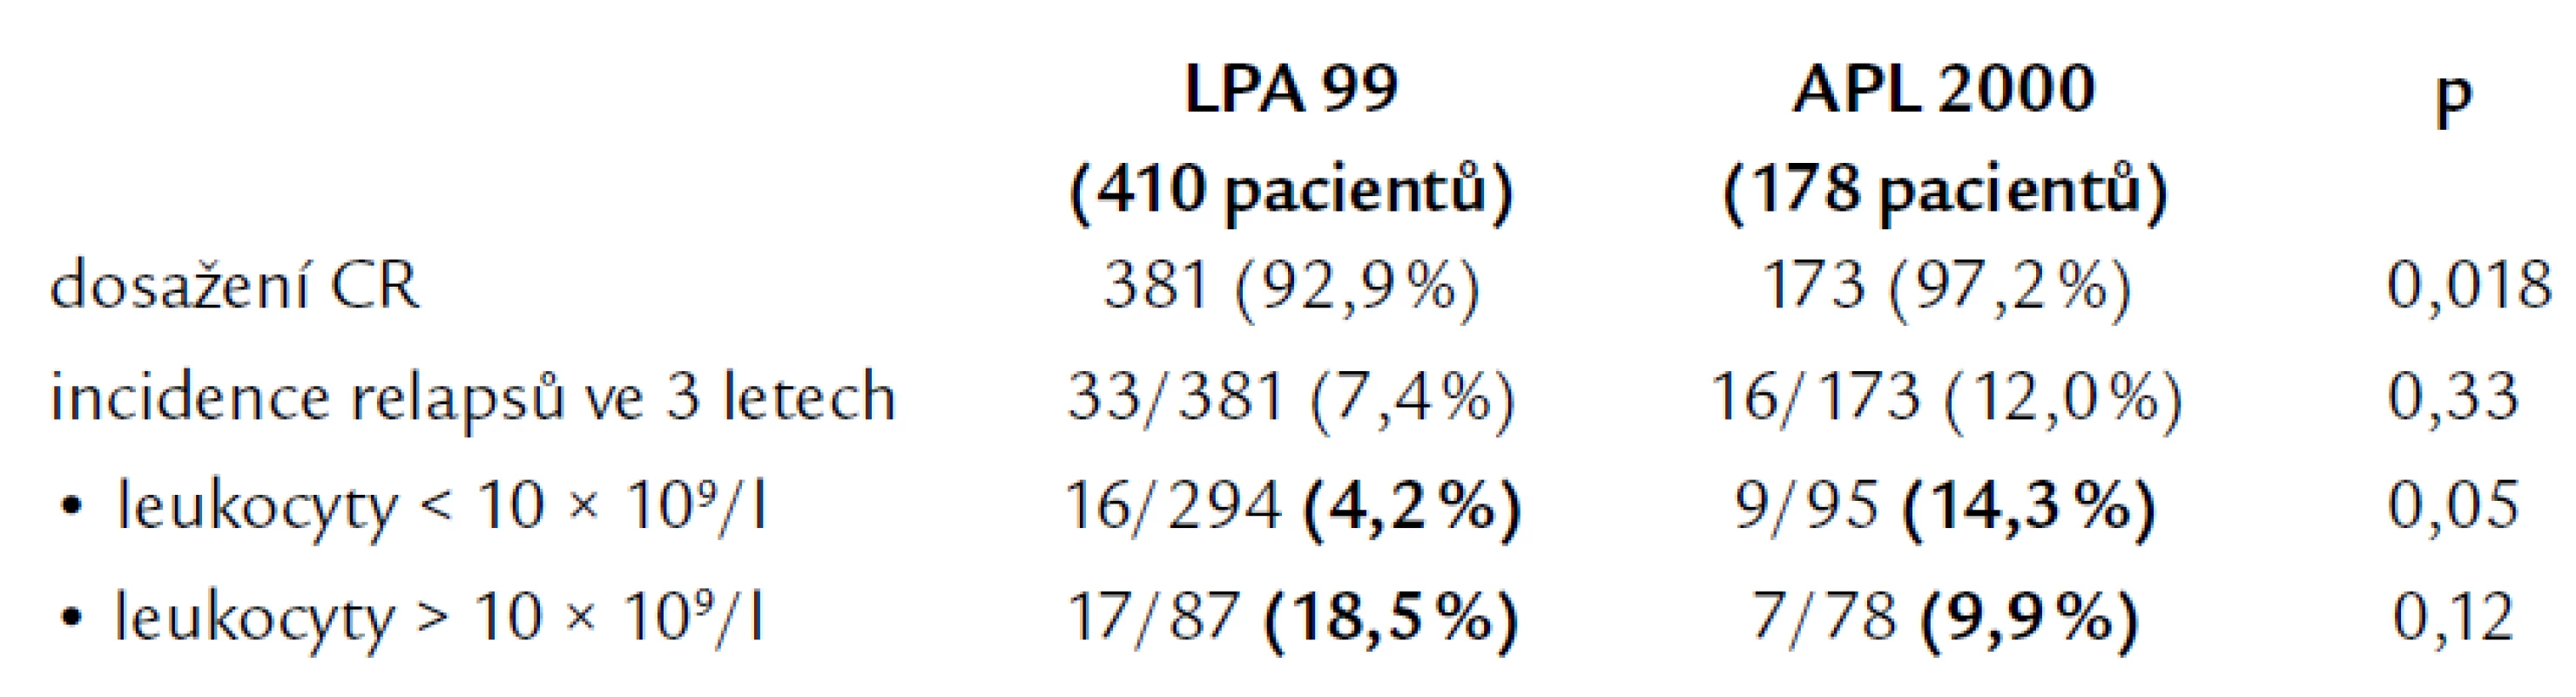 Výsledky léčby ve studiích LPA 99 a APL 2000. Podle [9].